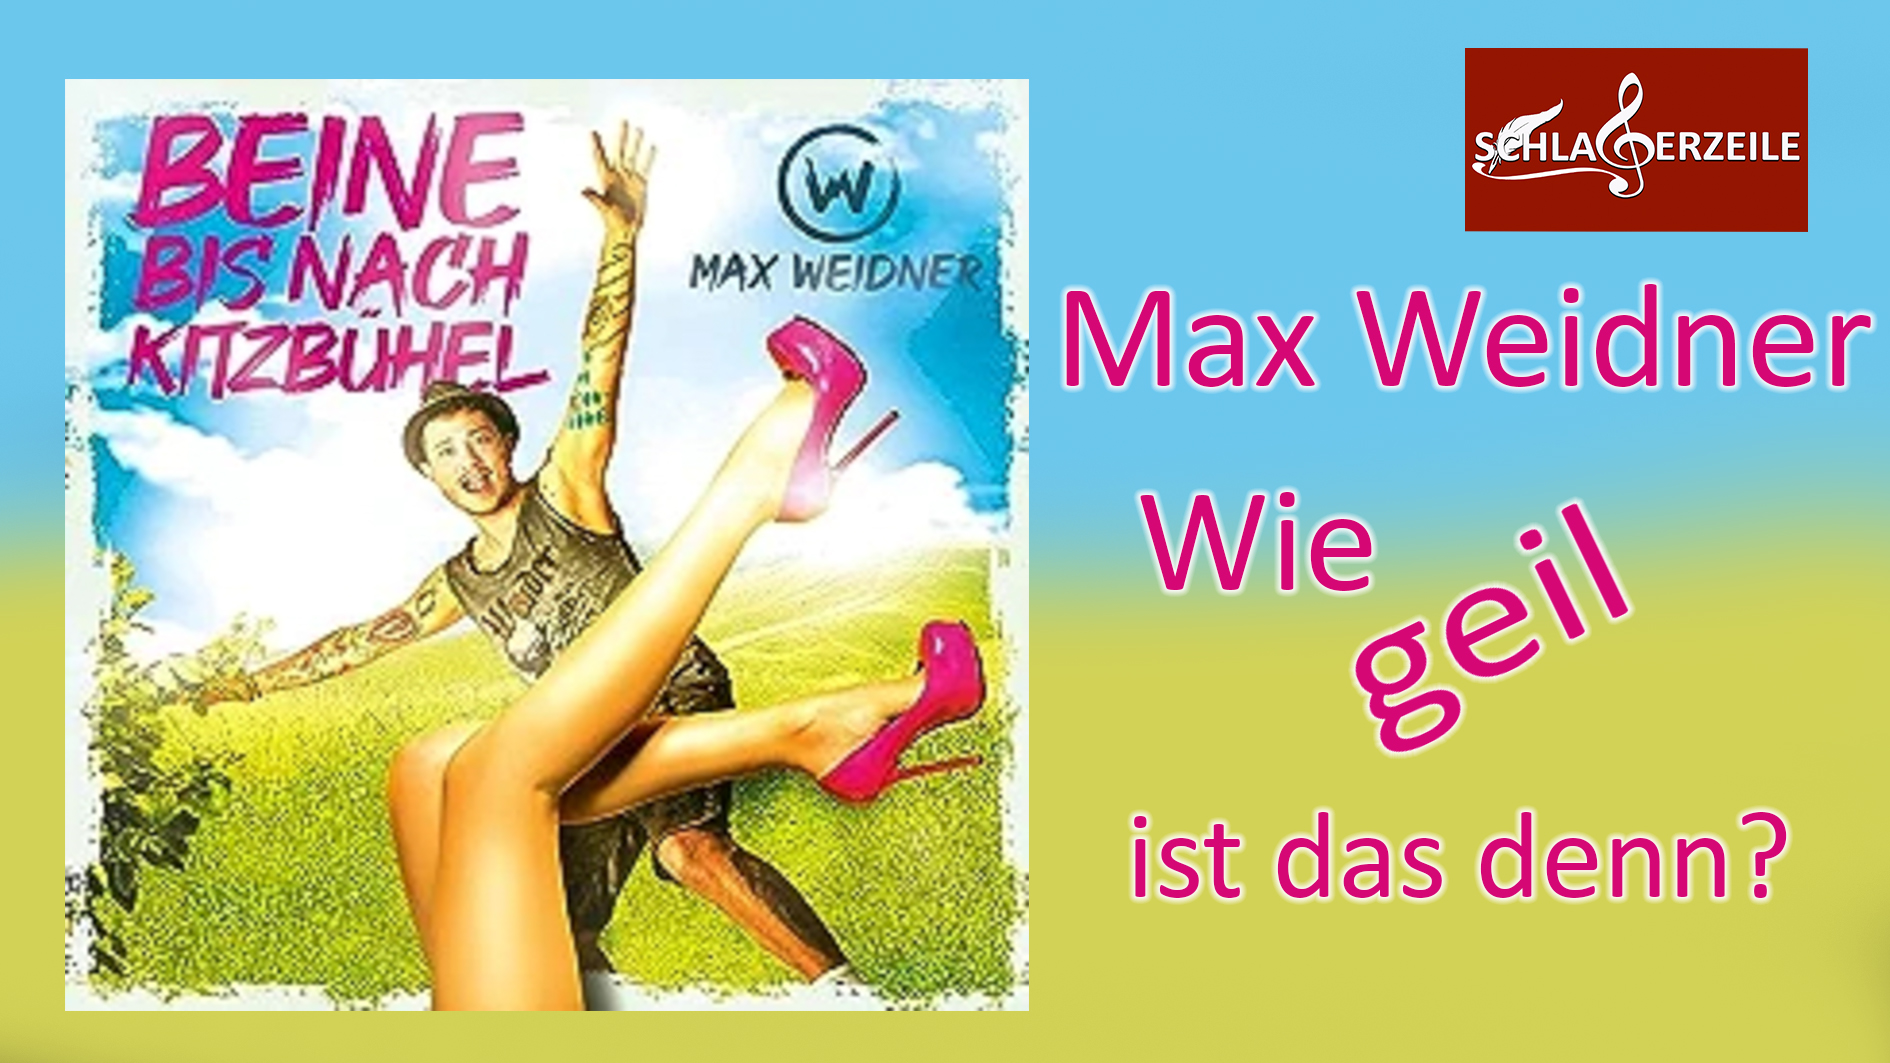 Max Weidner, Beine bis nach Kitzbühel